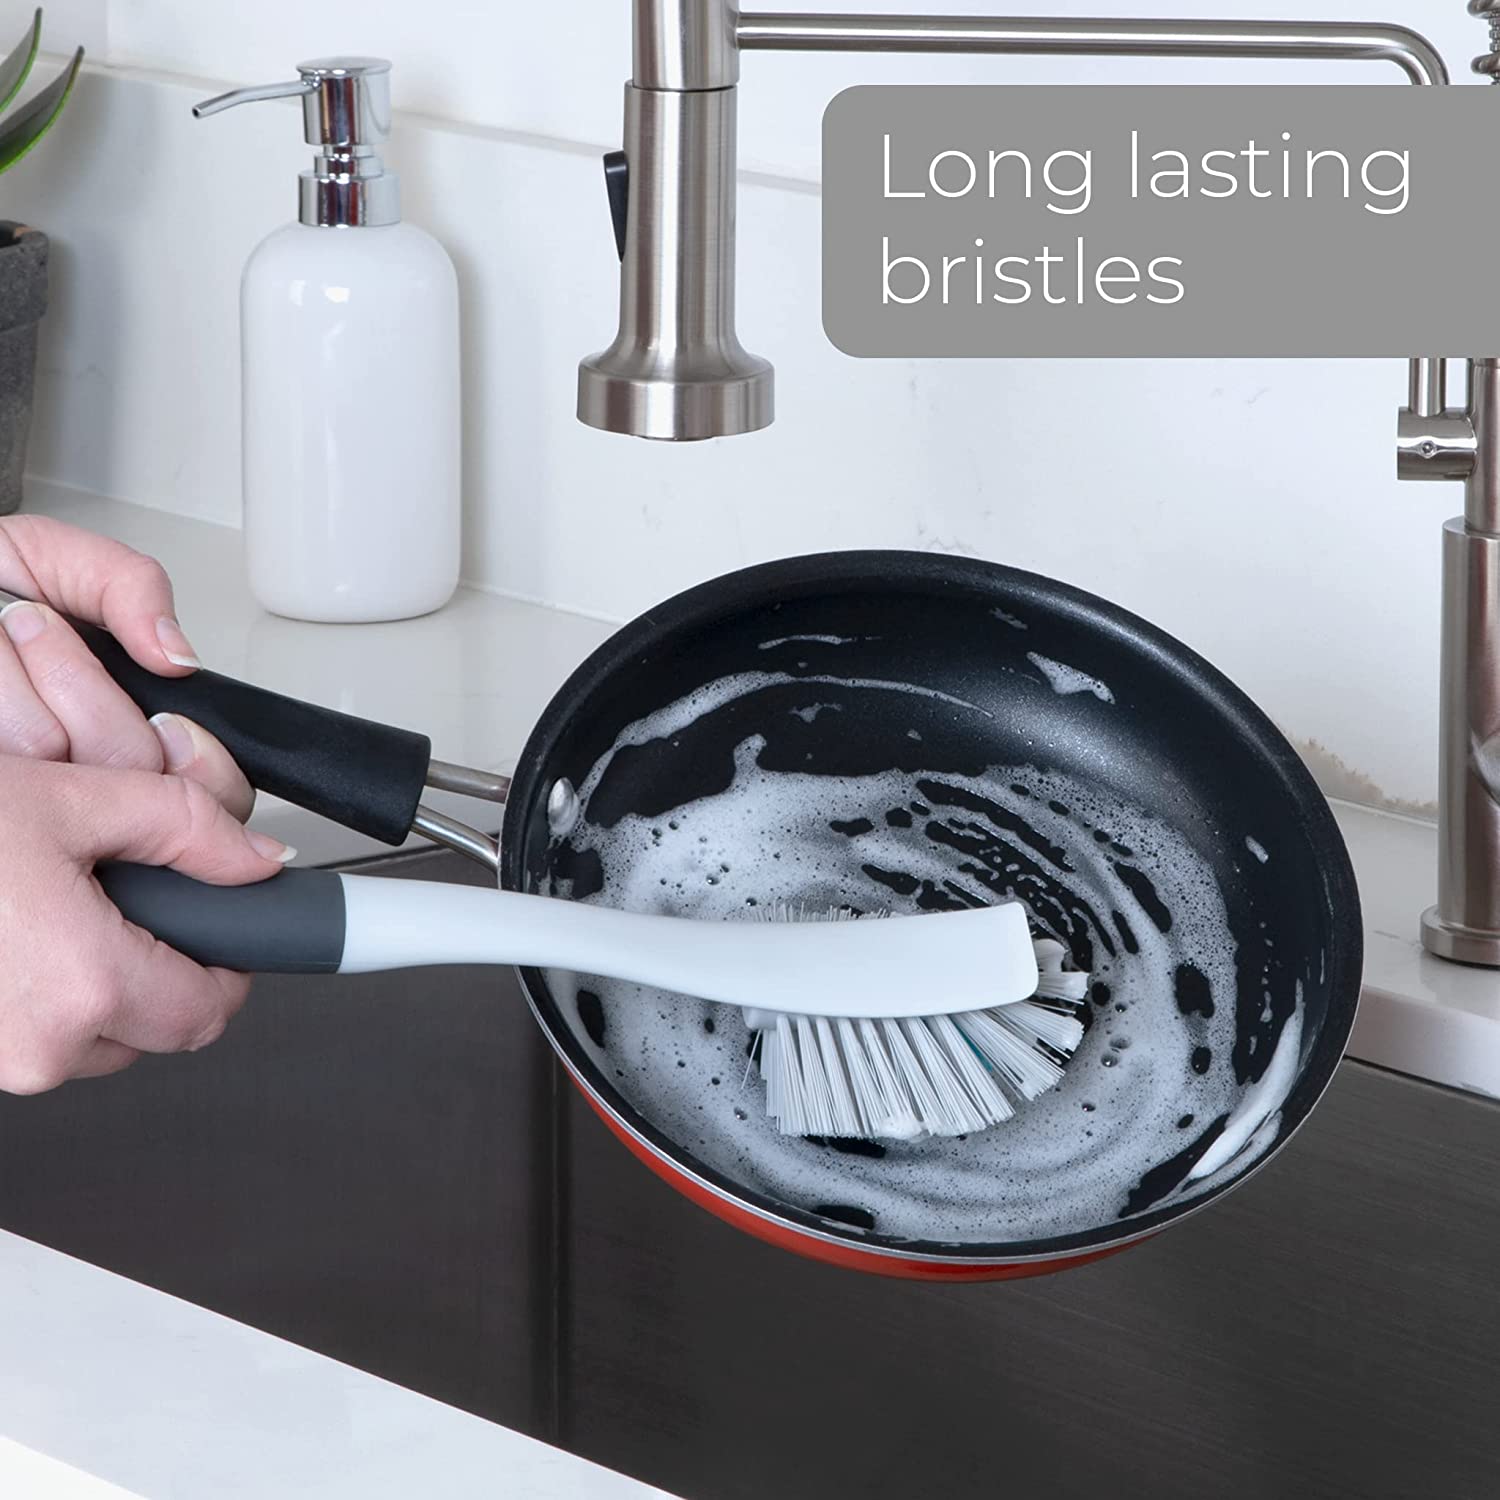 Smart Design Bottle Brush - Non-Slip Handle – Long Lasting Bristles - Dishwasher Safe - Cleans Water Bottles, Pitchers, Carafes, Vases - 10.5 Long